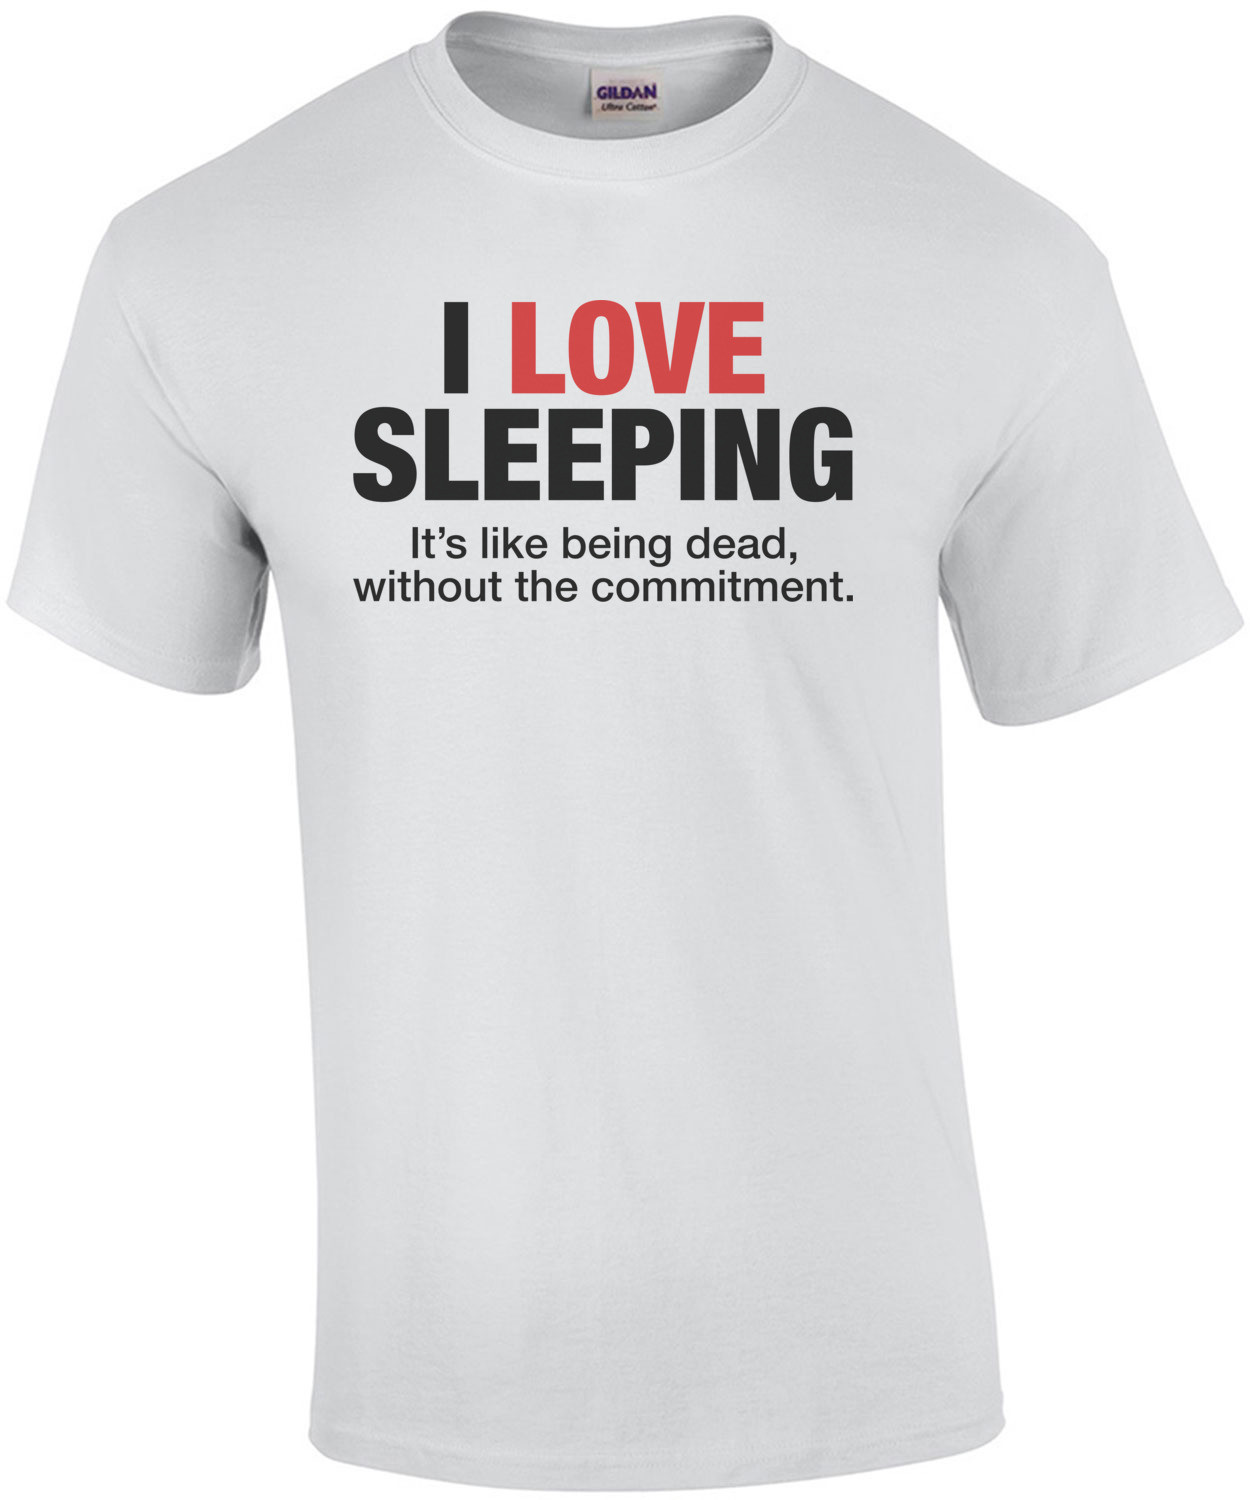 I Love Sleeping, It's Like Being Dead